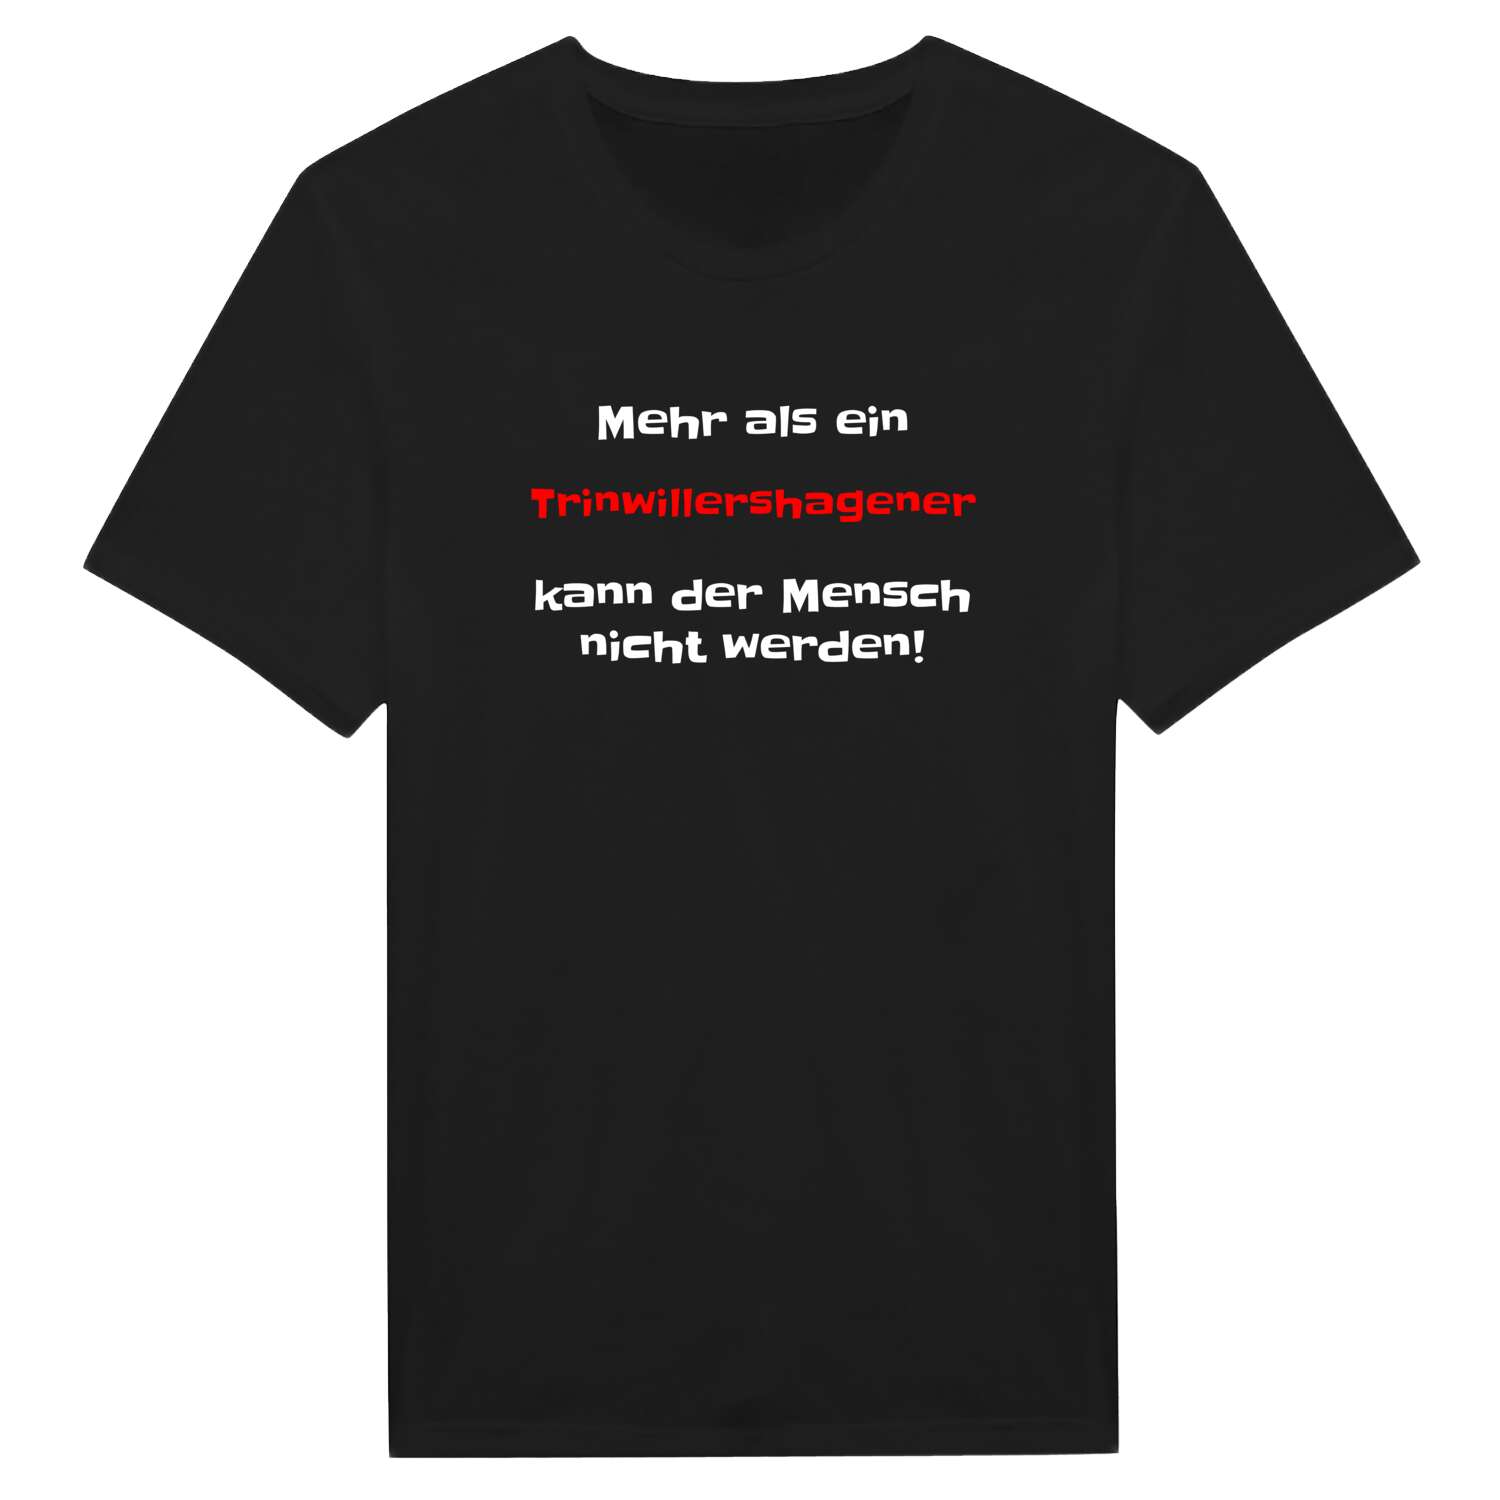 Trinwillershagen T-Shirt »Mehr als ein«